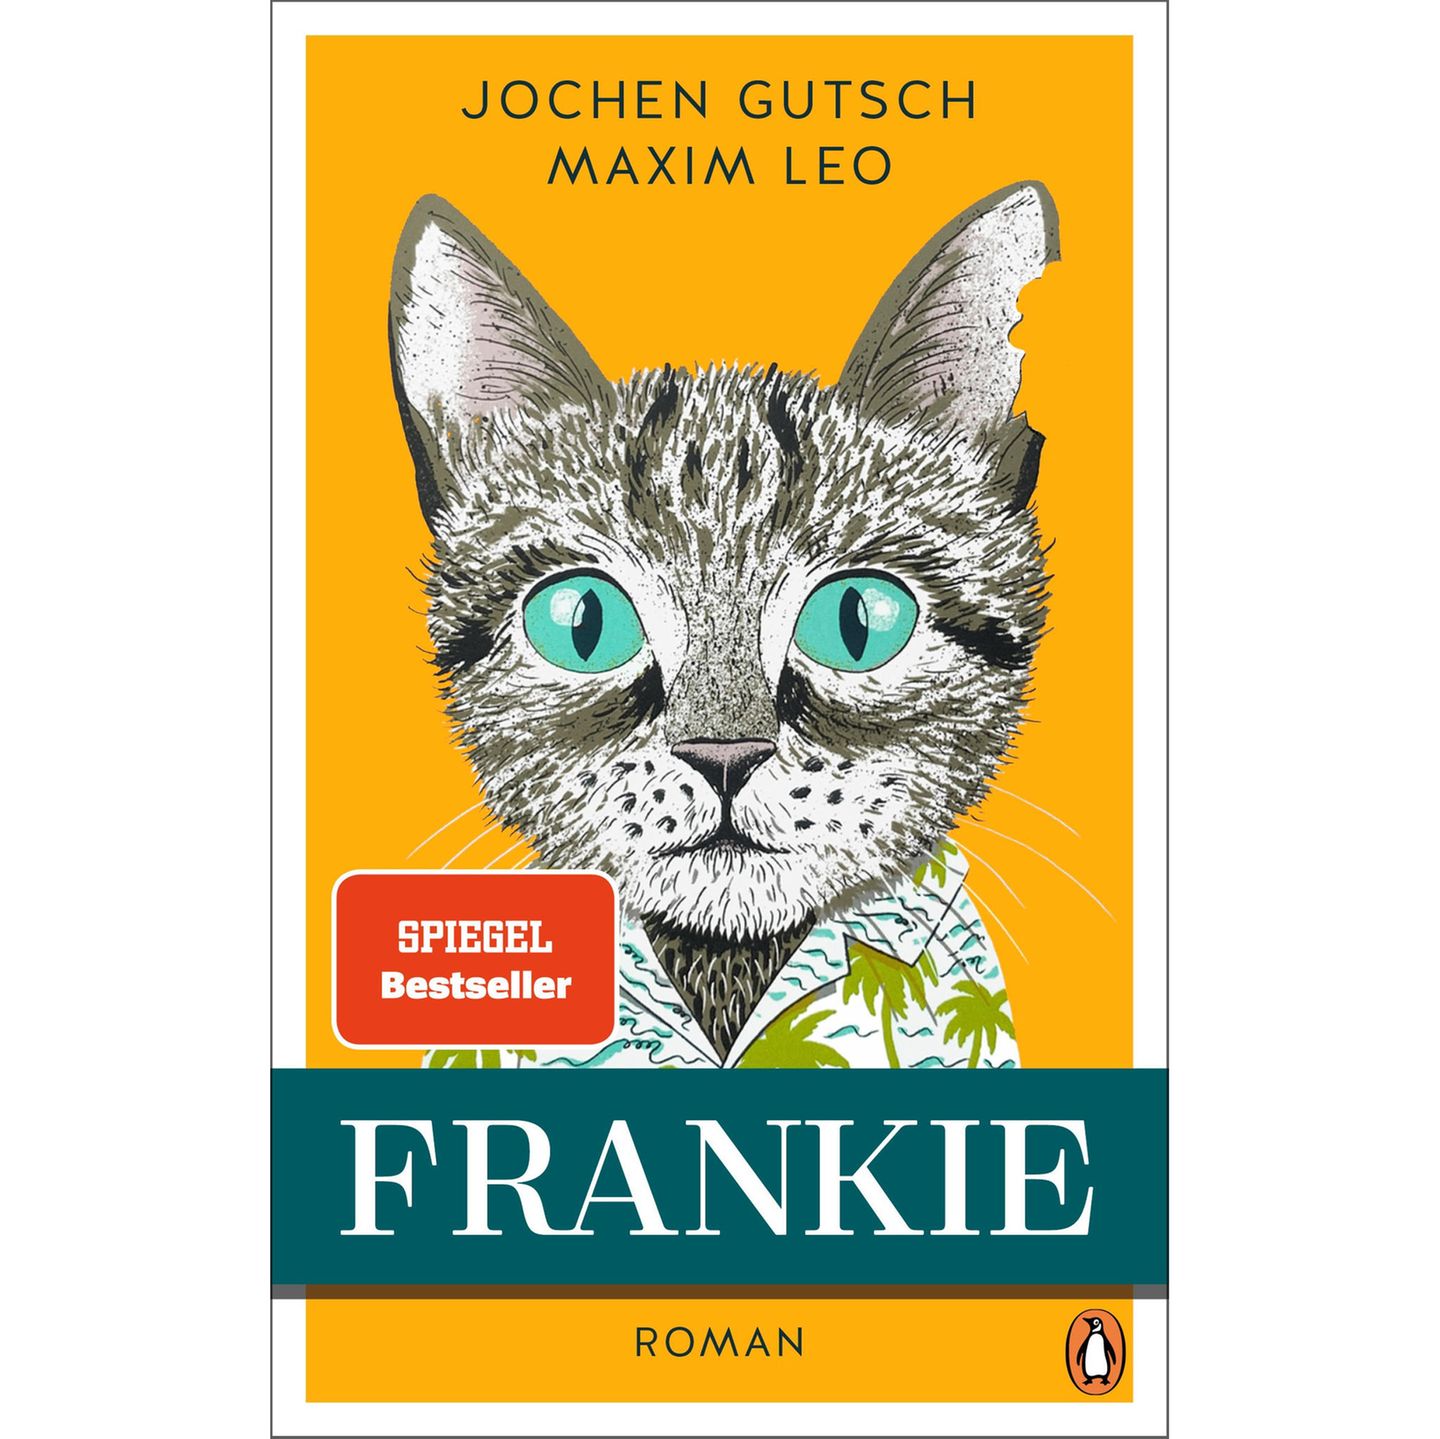 Jochen Gutsch, Maxim Leo: Frankie